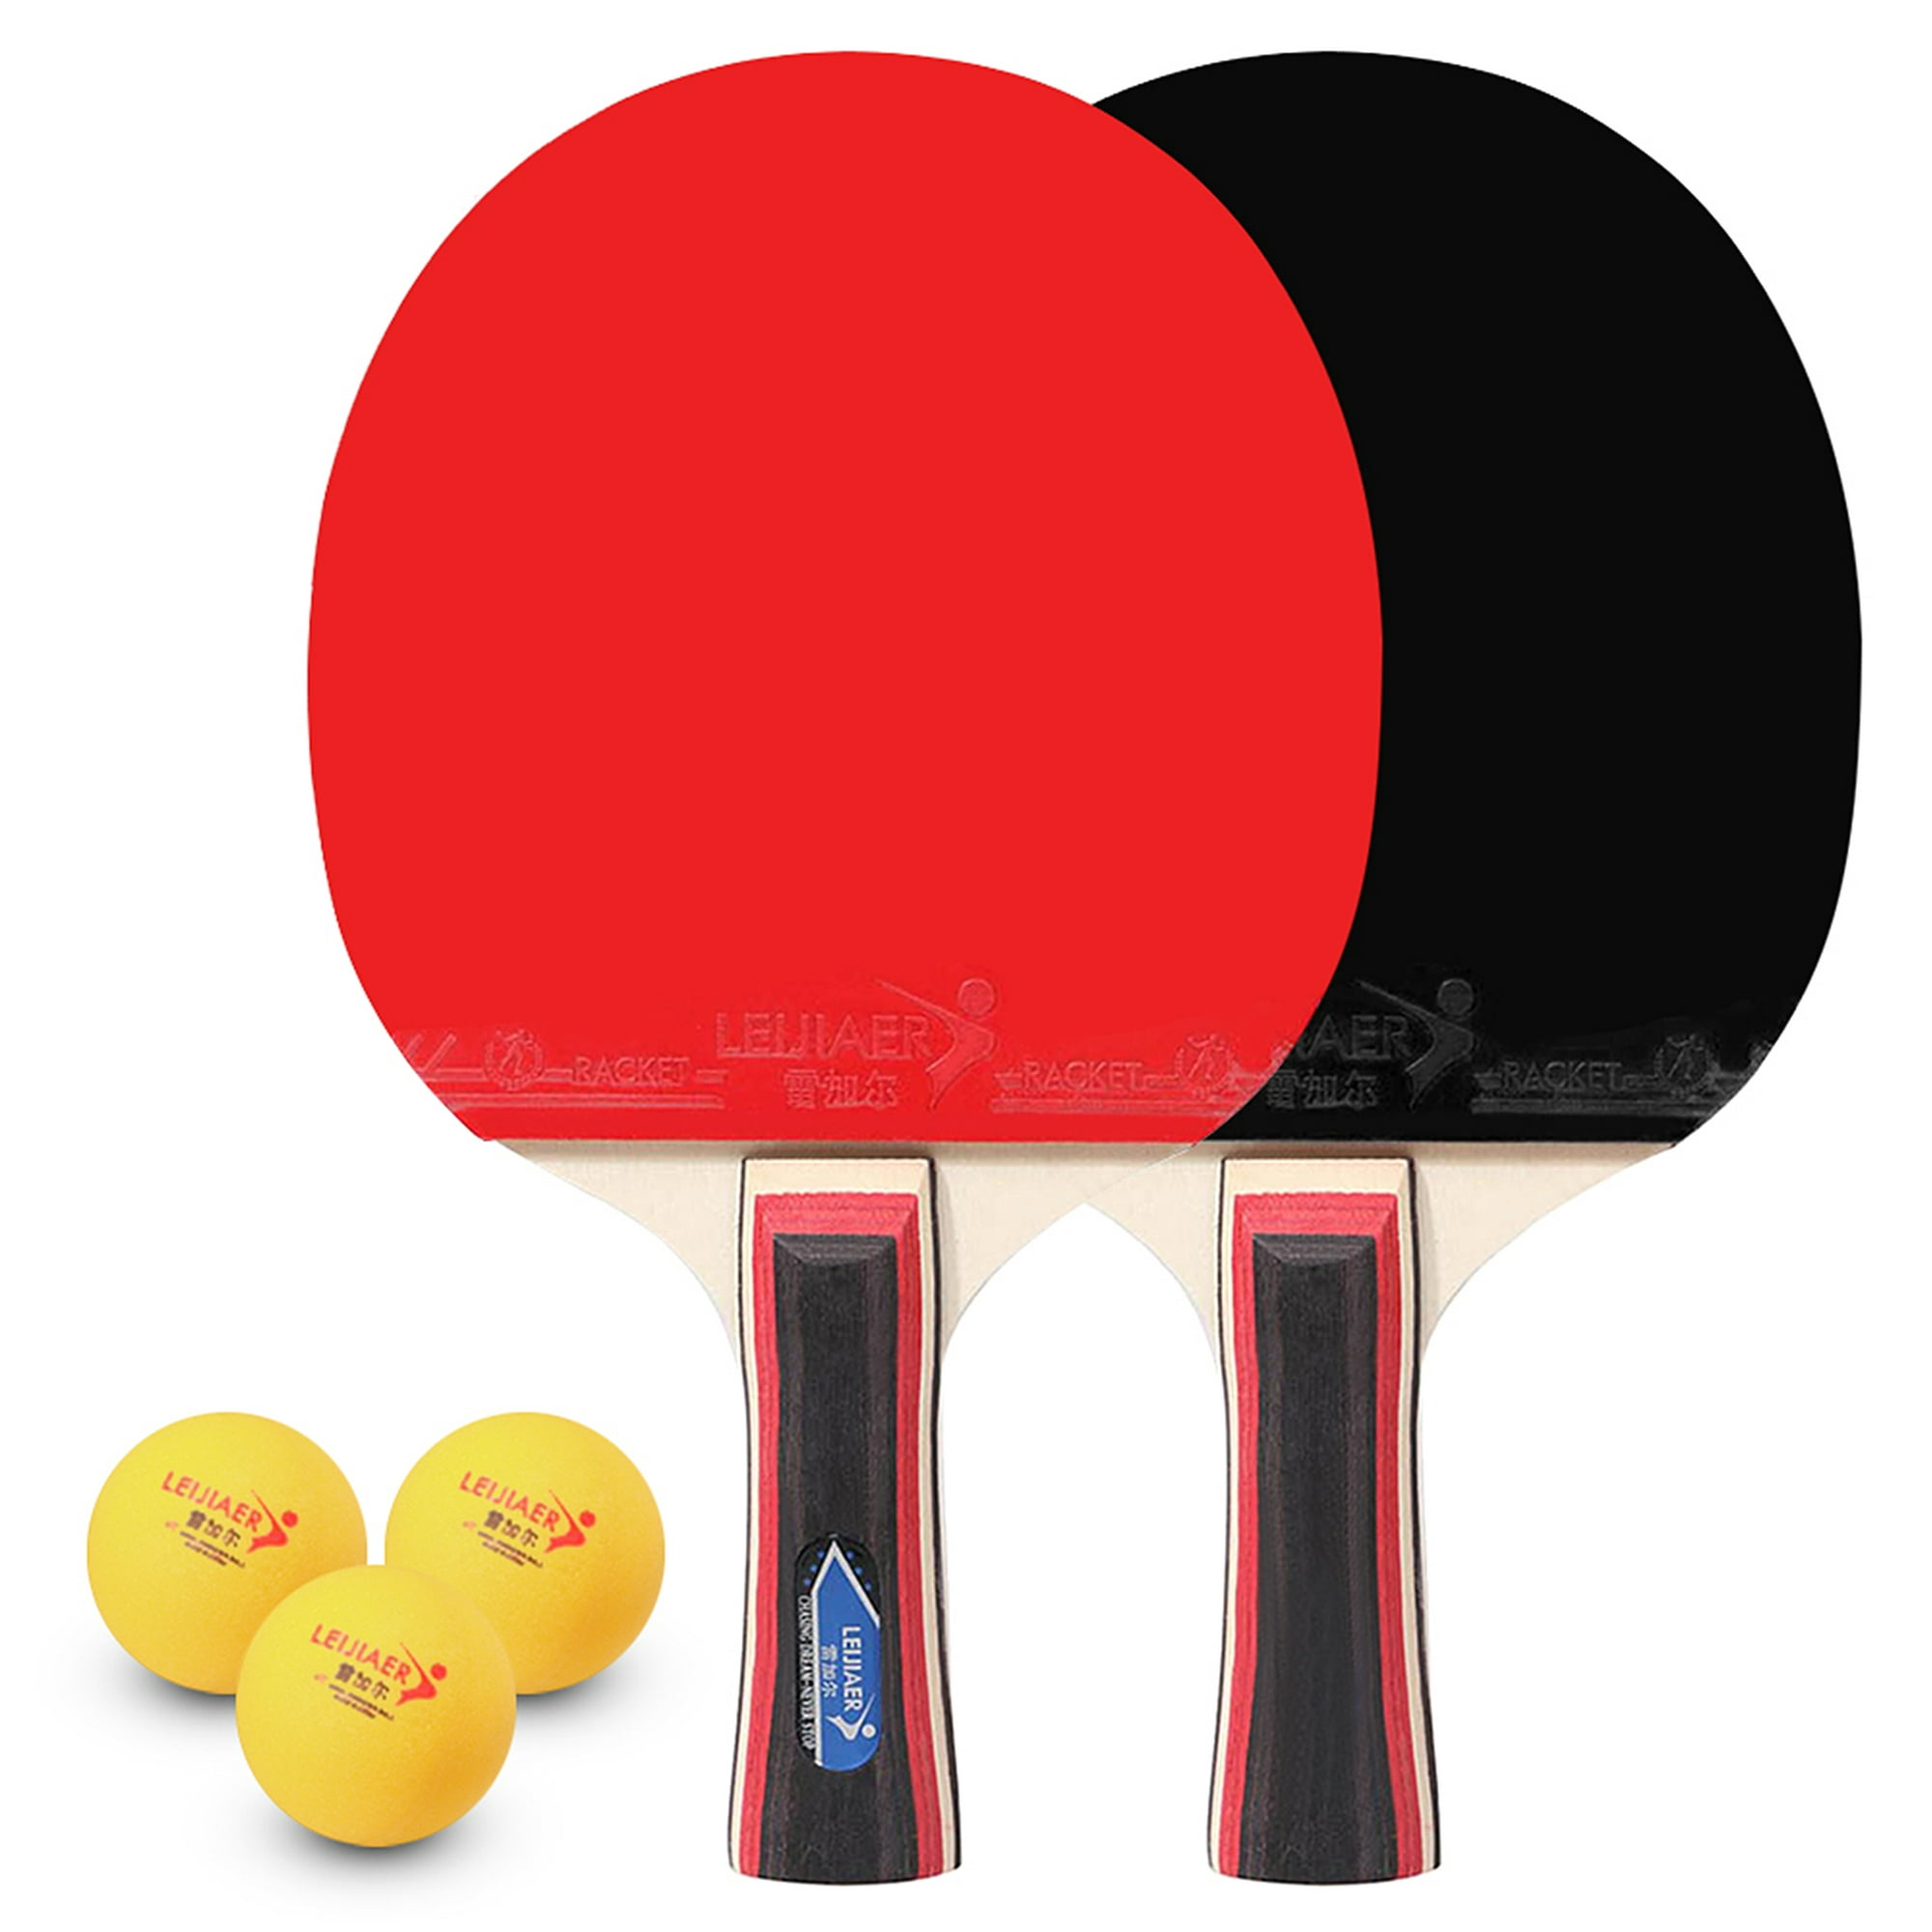 Tomantery Red de nylon de tenis de mesa Red de Pingpong Red de tenis de mesa  de nylon al aire libre ligera para jugadores de tenis de mesa : Deportes y,  red